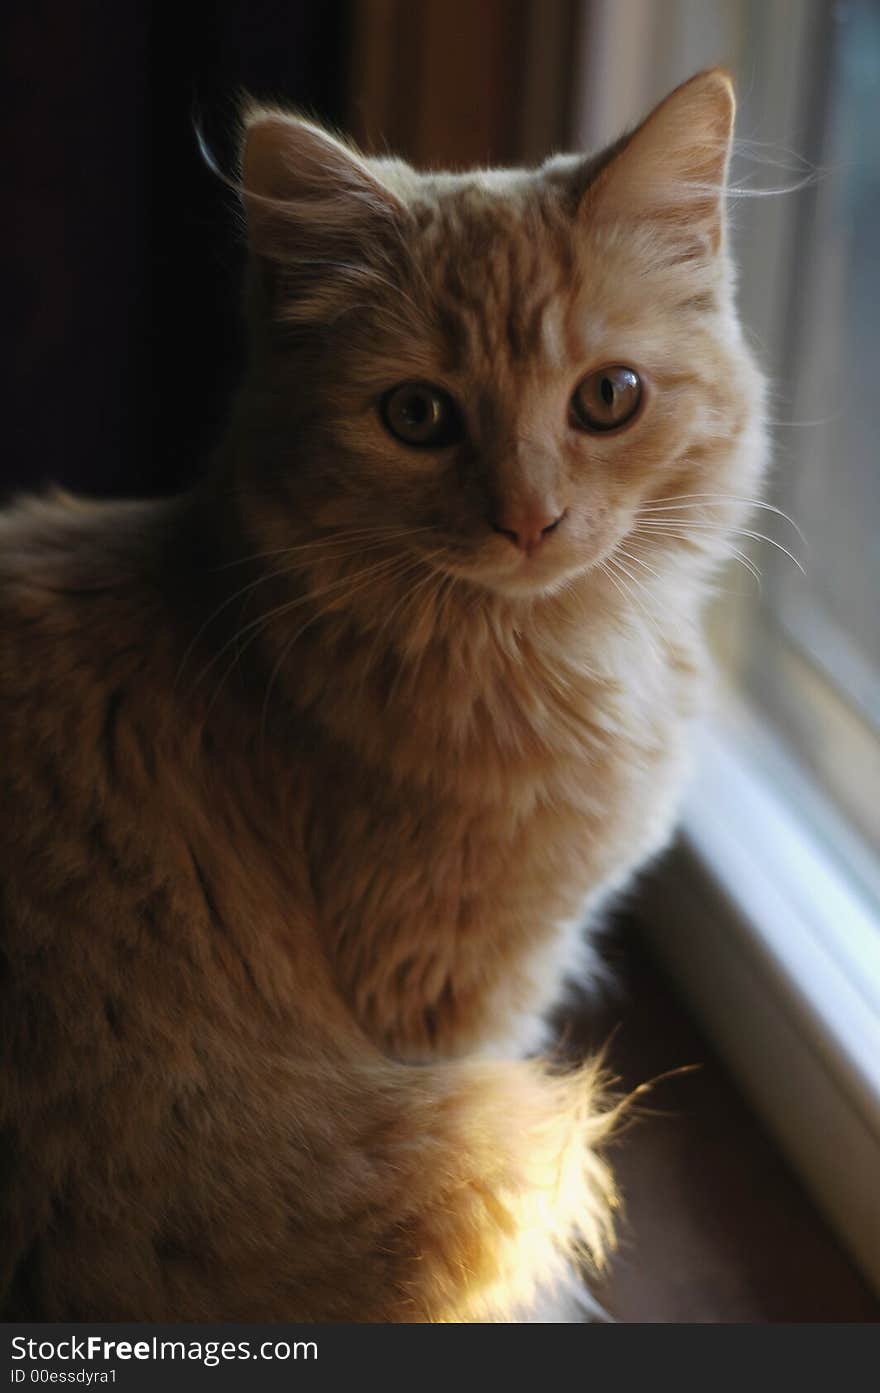 A small orange kitten sitting in the window.